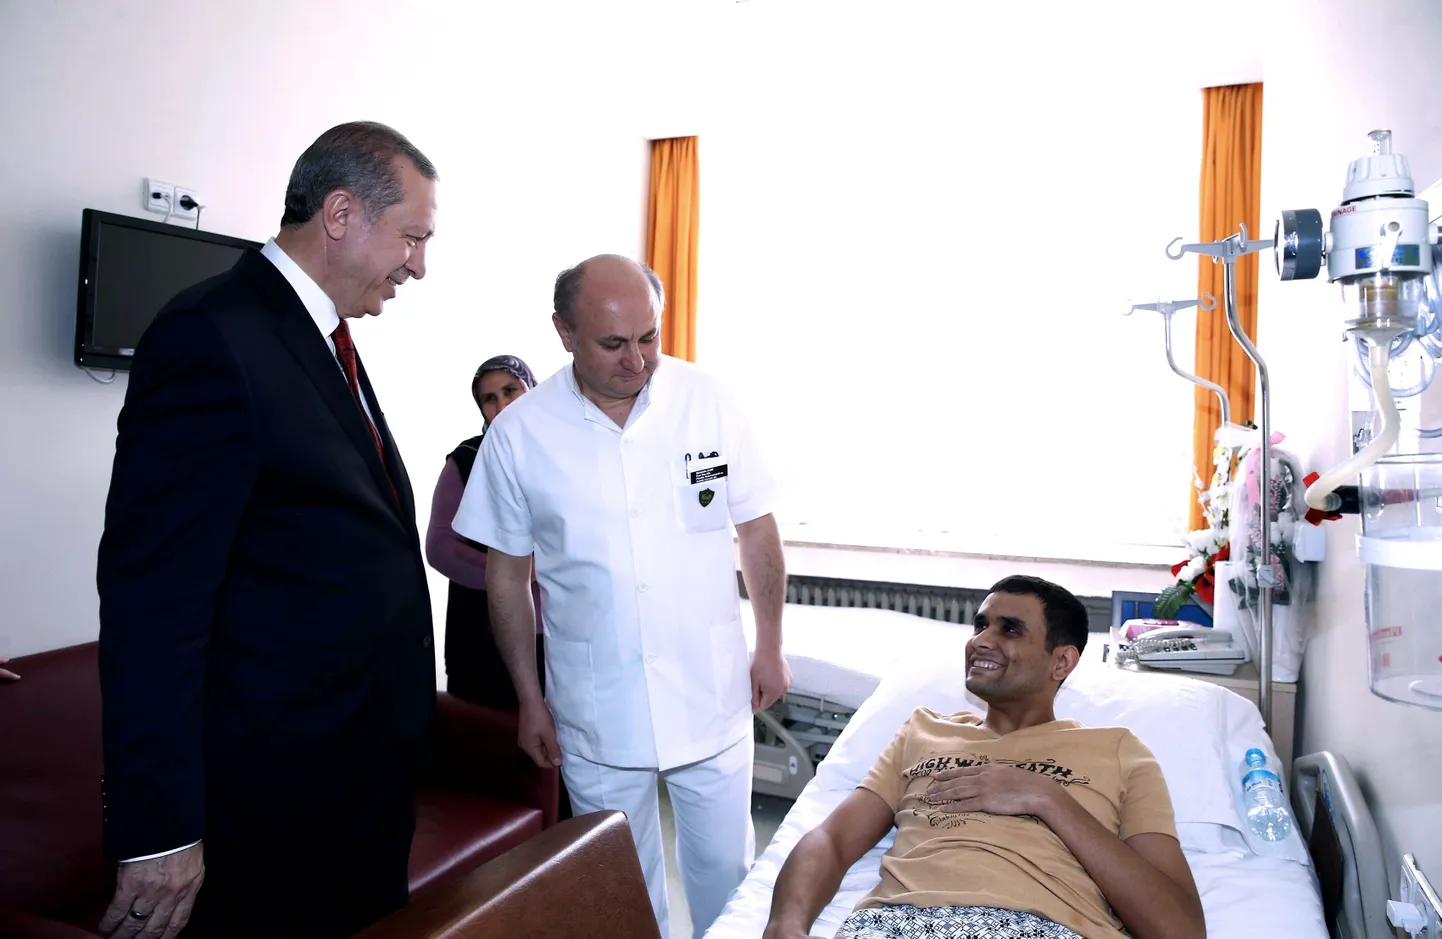 Türgi president Recep Tayyip Erdogan külastamas veebruaris Ankara terrorirünnaku ohvrit Gulhane'i sõjaväehaiglas.